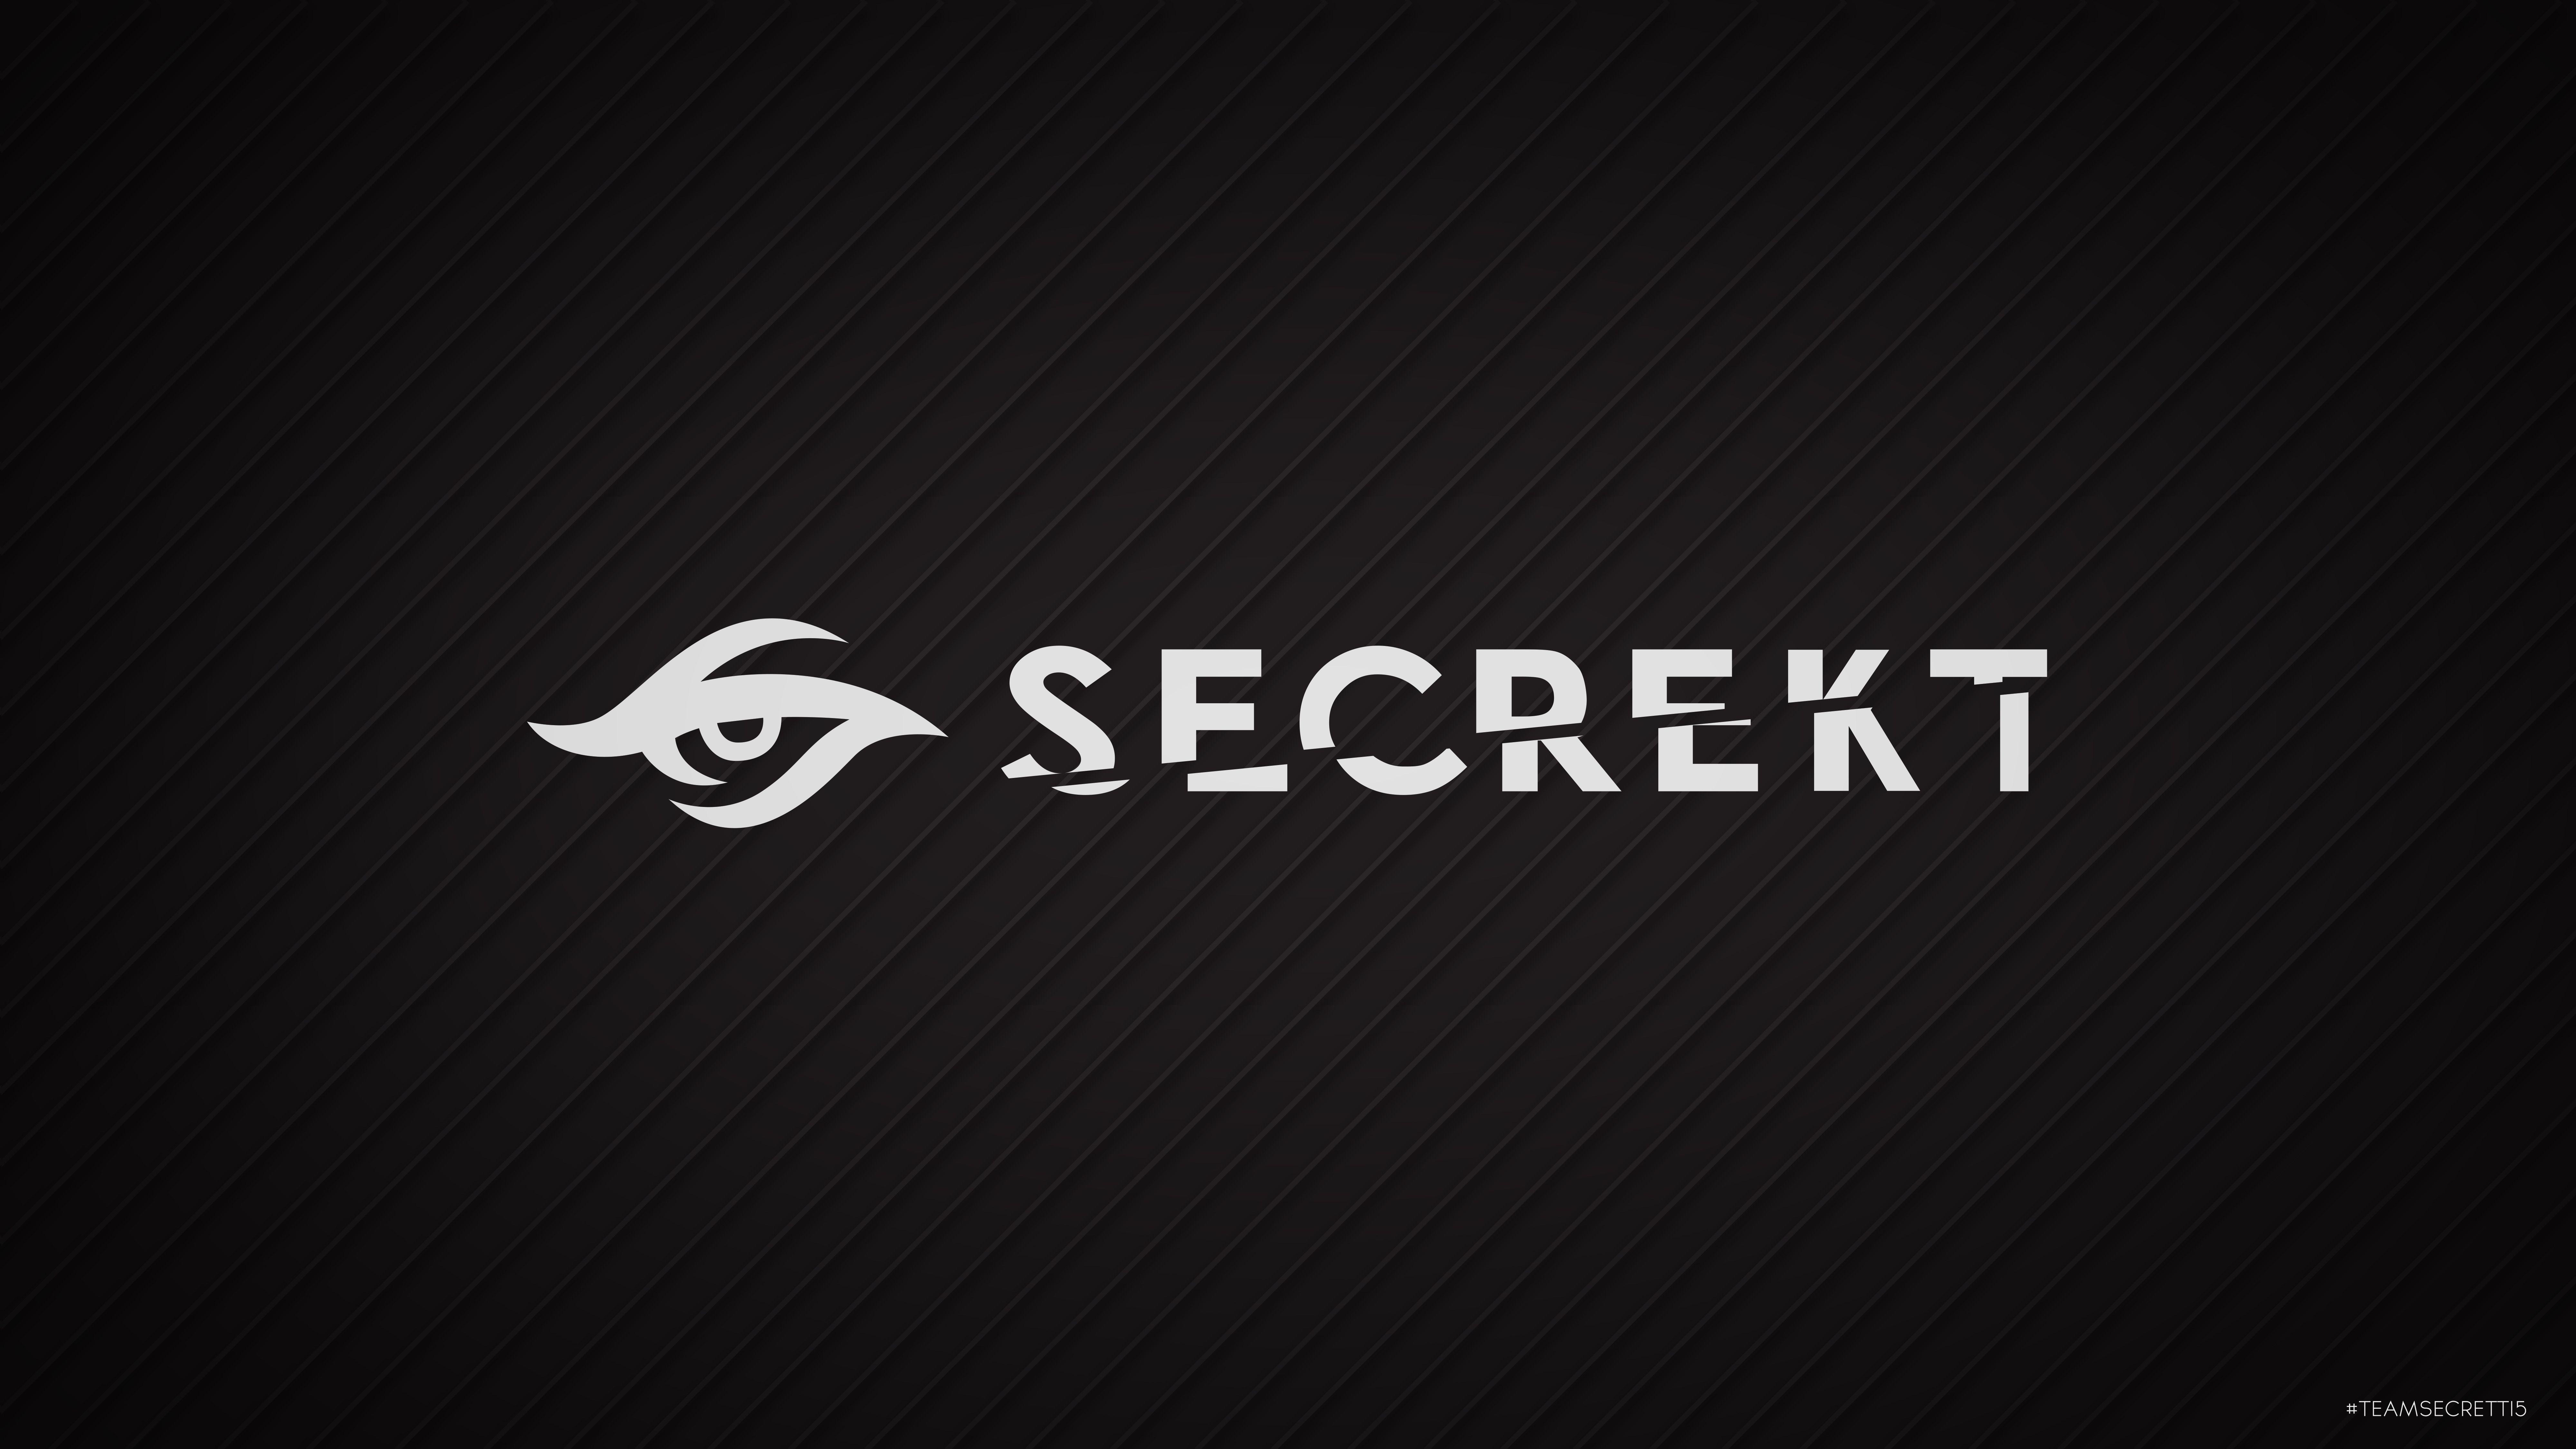 Team Secret Wallpaper (secREKT)